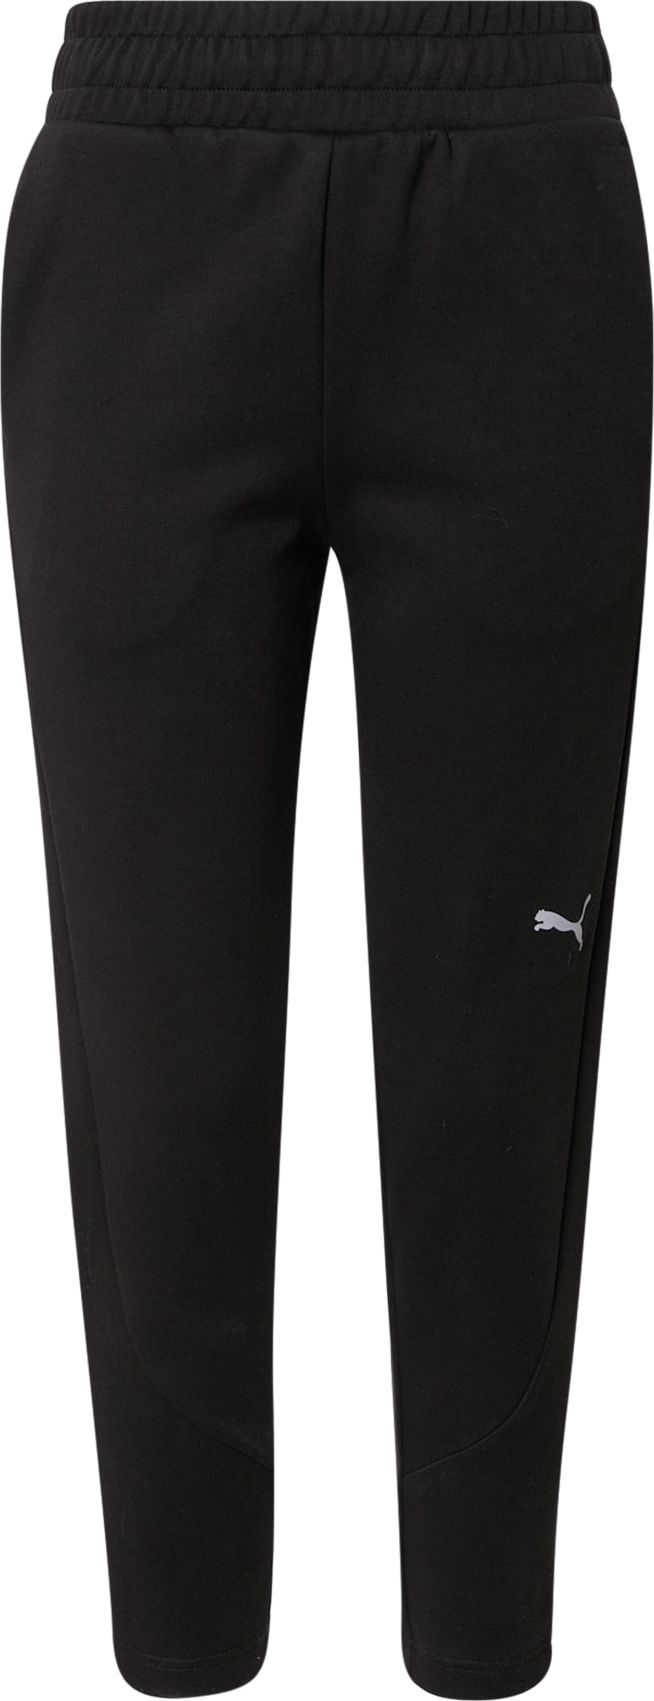 PUMA Sportovní kalhoty 'Evostripe' černá / světle šedá